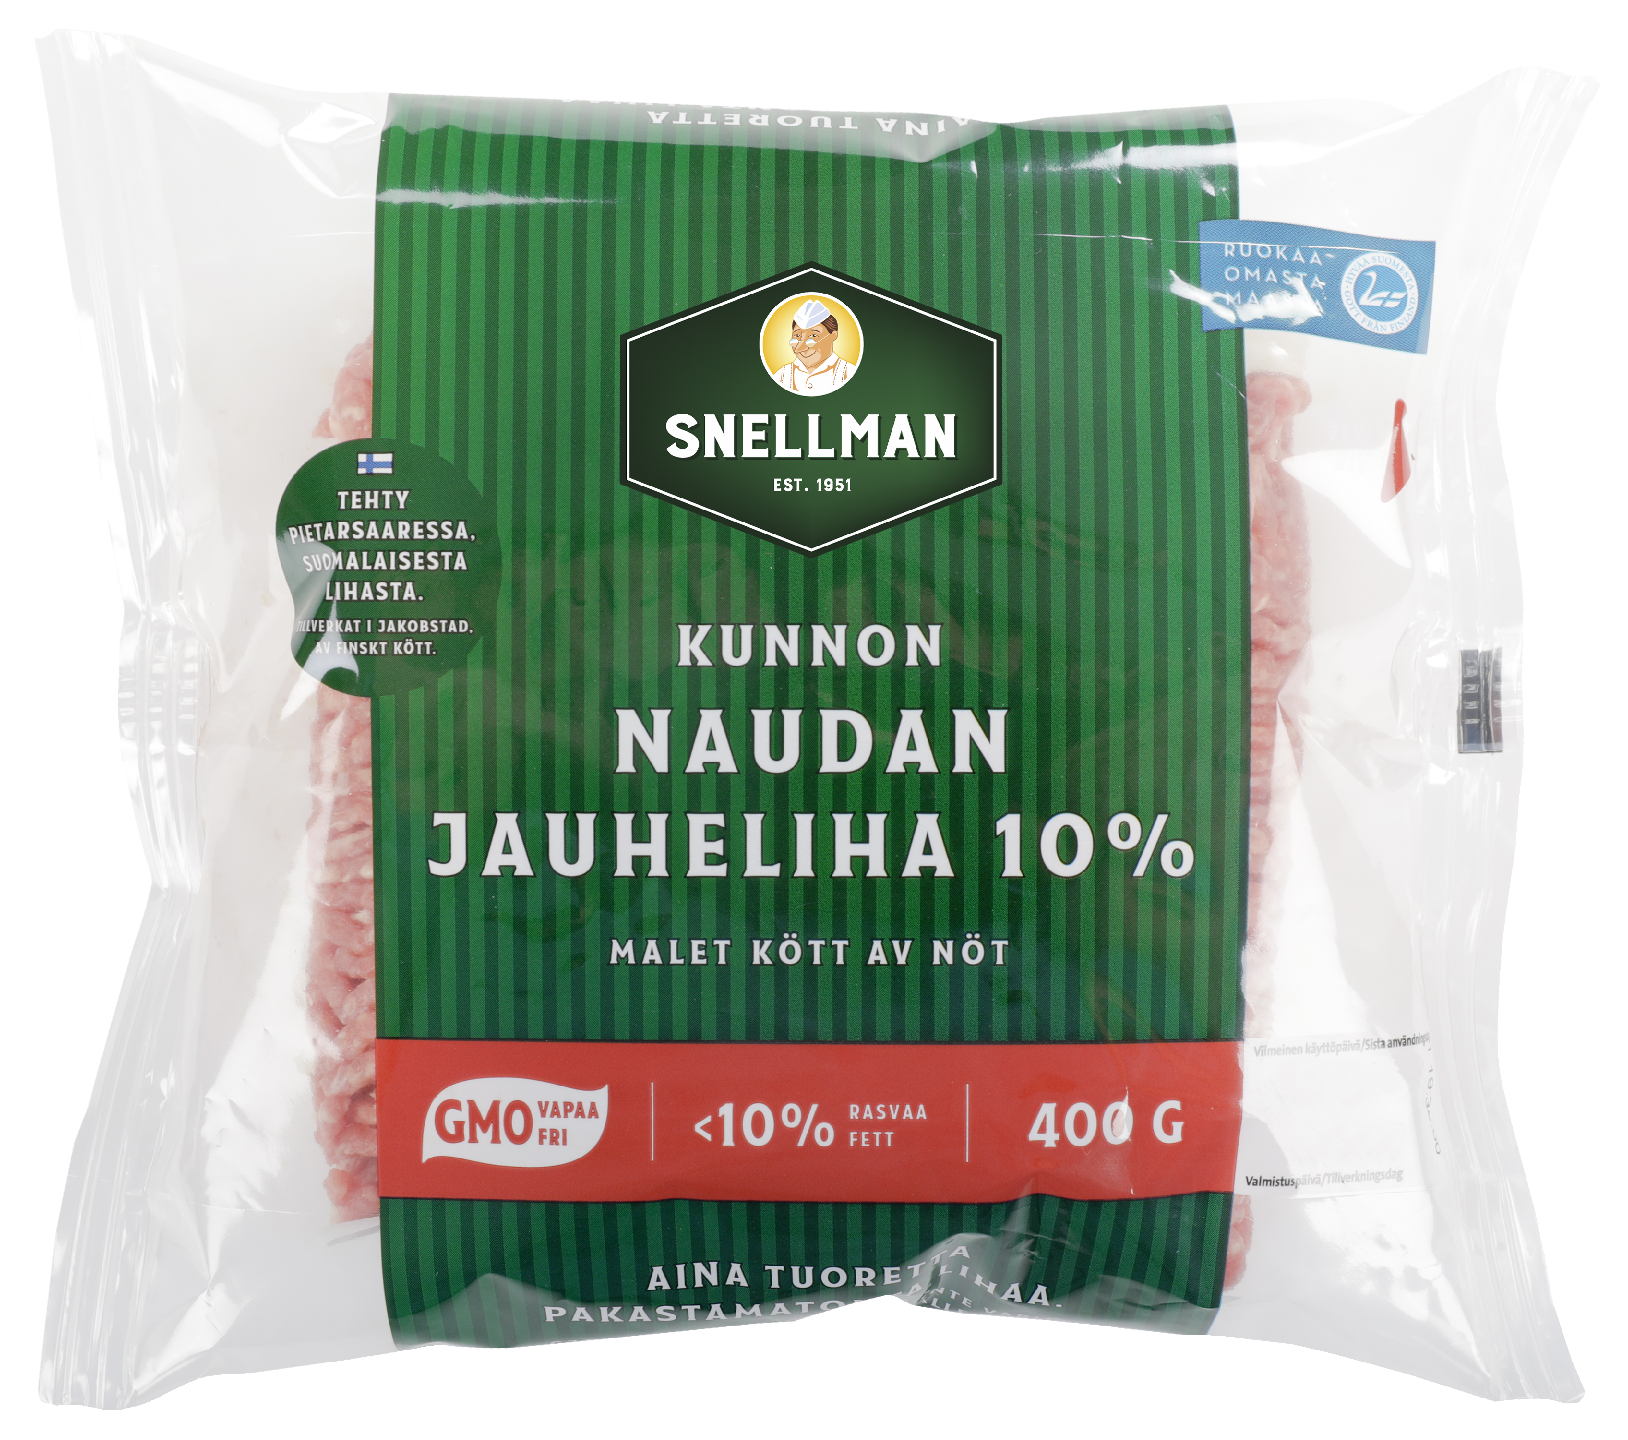 Snellman 400g Kunnon naudan jauheliha 10%